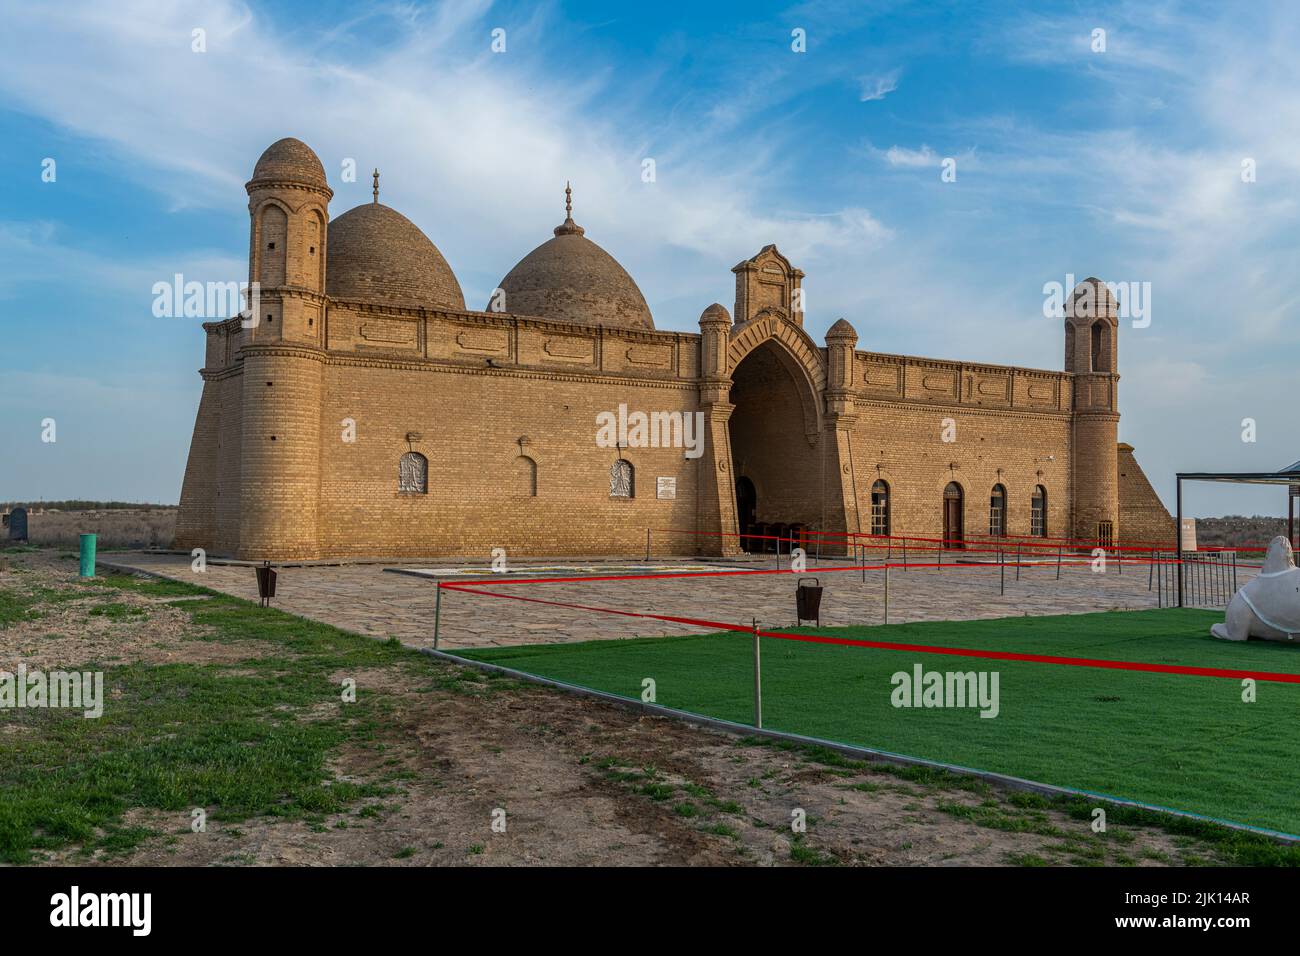 Arystanbab Mausoleum, Turkistan, Kazakhstan, Central Asia, Asia Stock Photo